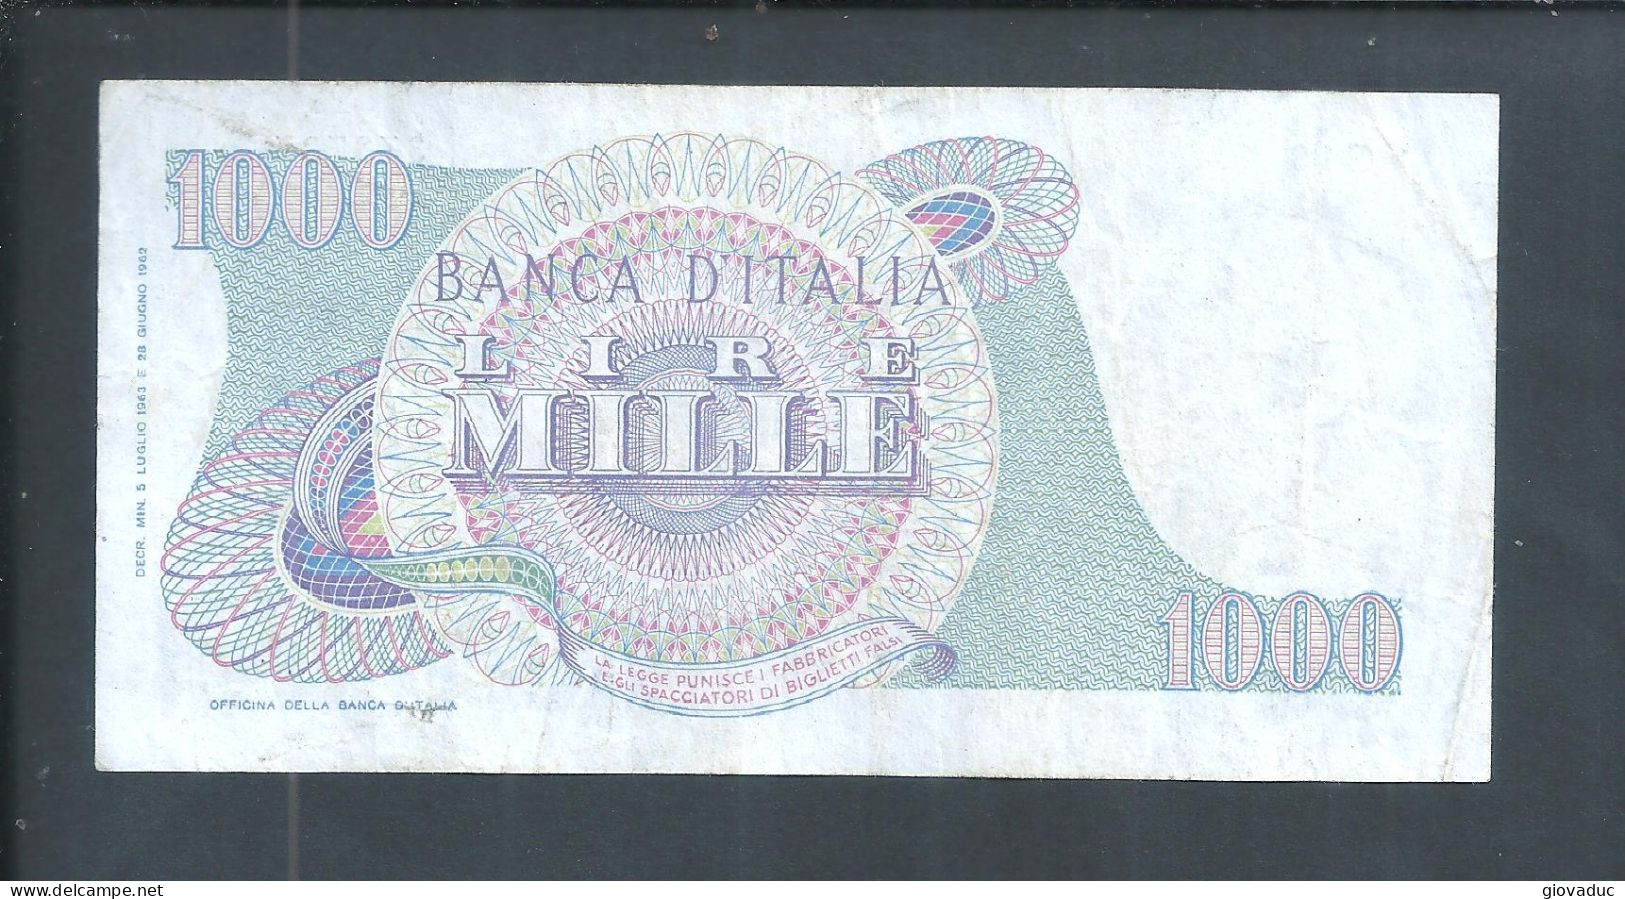 Banconota Italia 1000 Lire 28 Giugno 1962 - Rarita Unica N° C18 - 373737 - Filigrana - Vedi Foto Firme Carli-Ripa - - [ 7] Fehlliste & Abarten